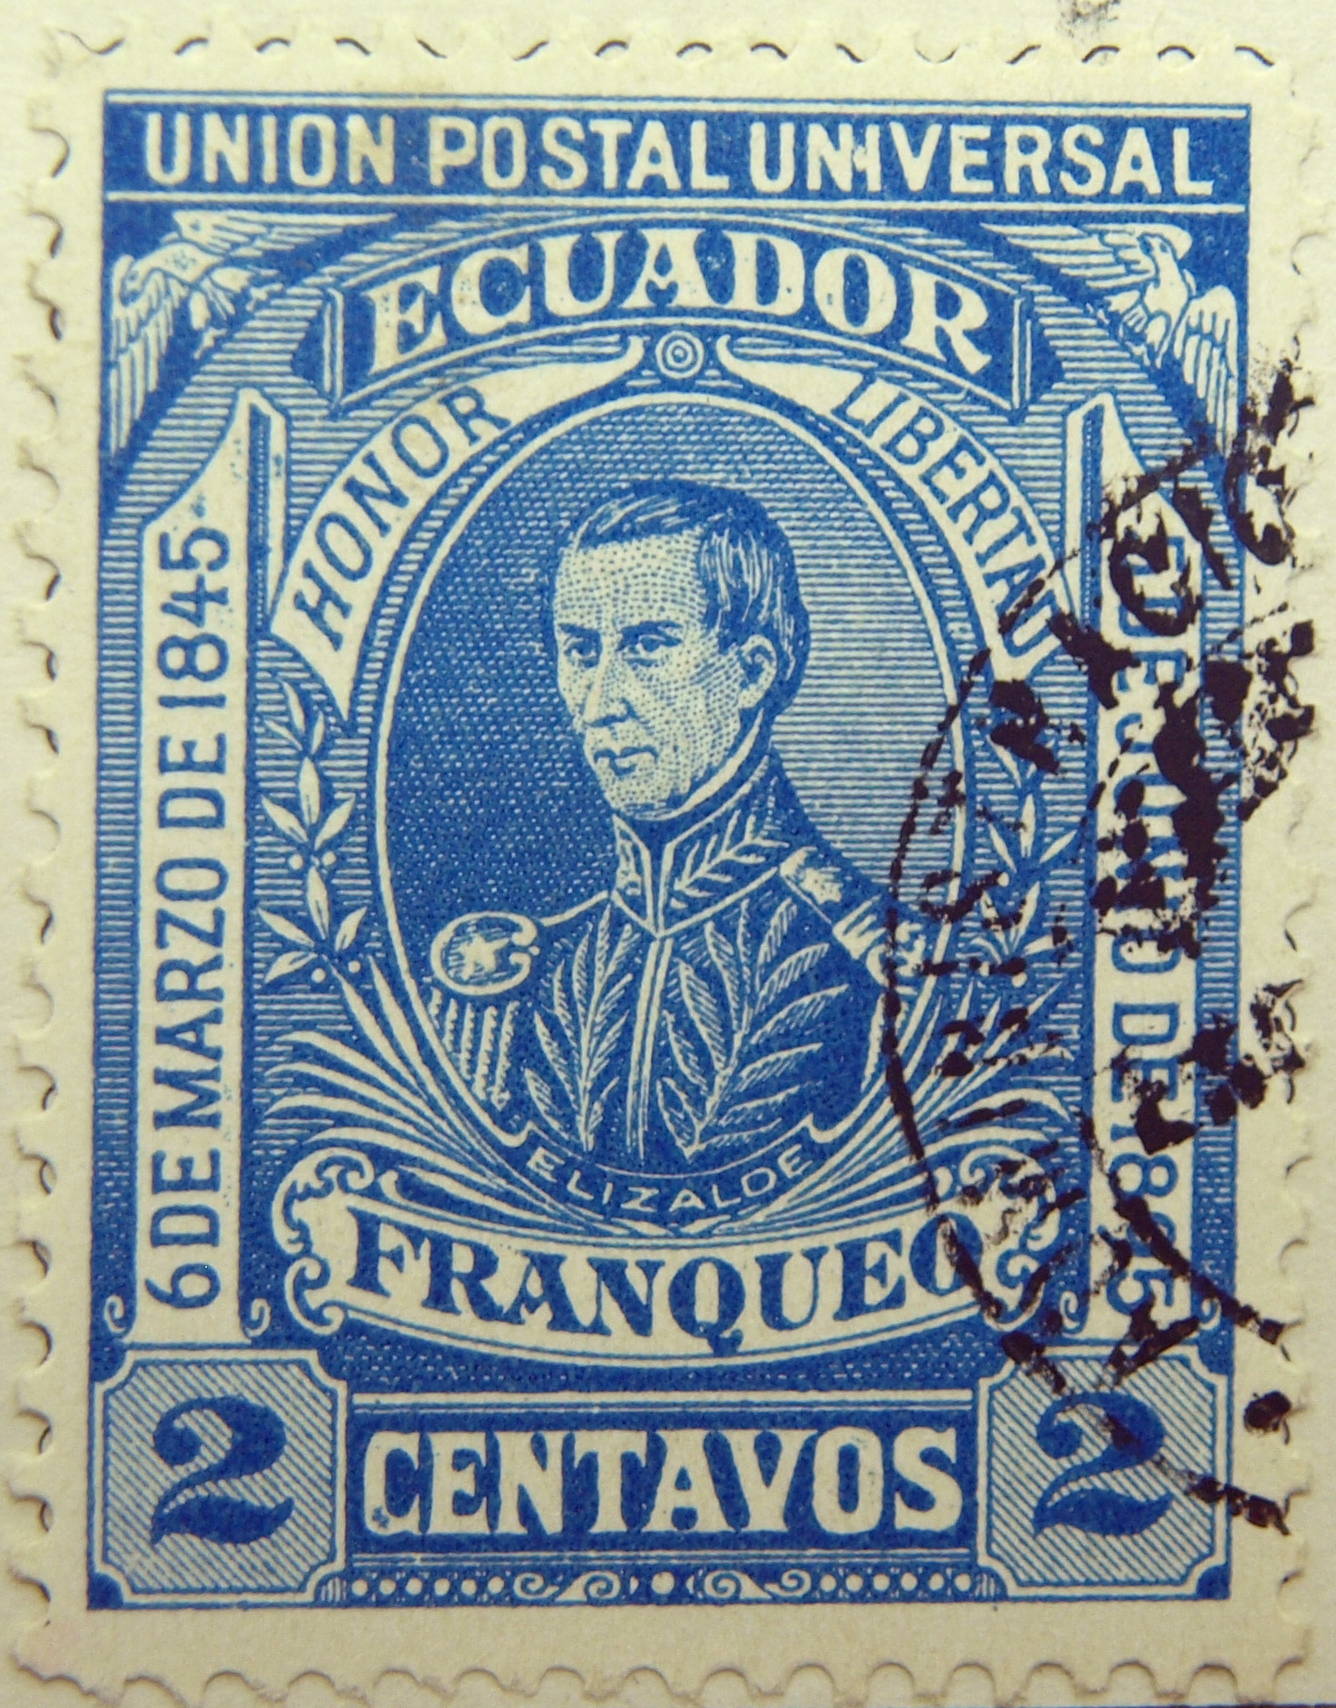 Ecuador stamps